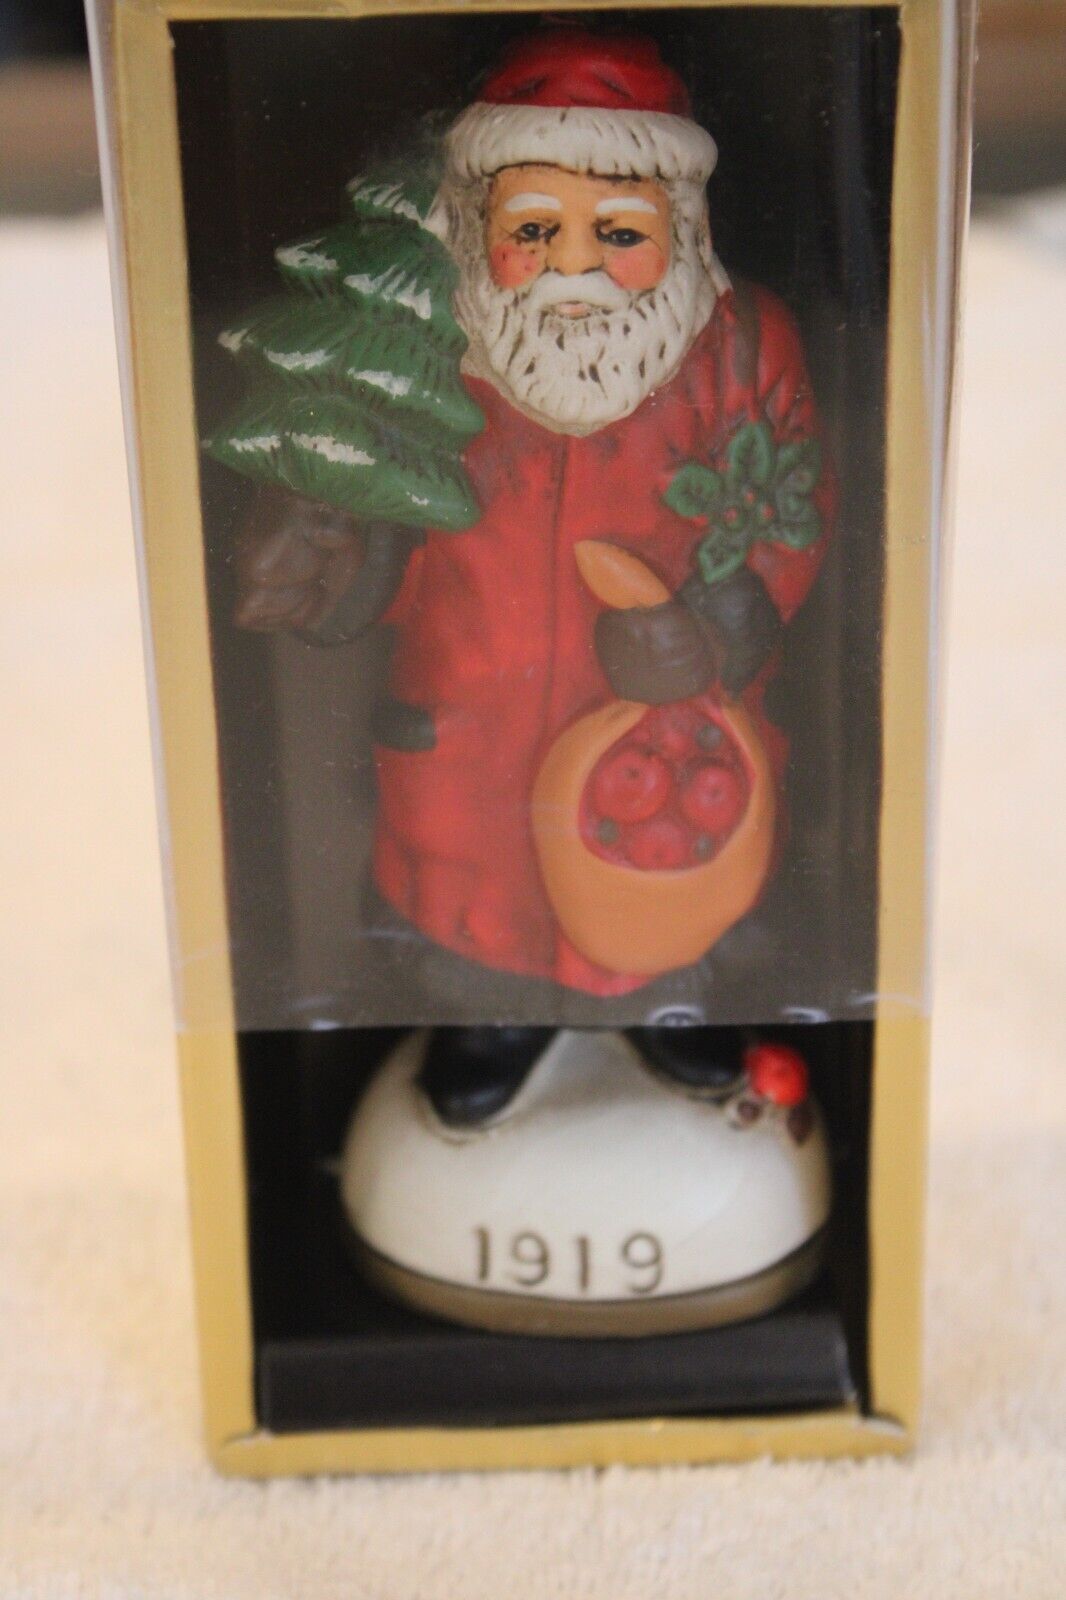 Vintage 1987 Memories Of Santa 1919 Edition Original Box Made in Korea Excellent